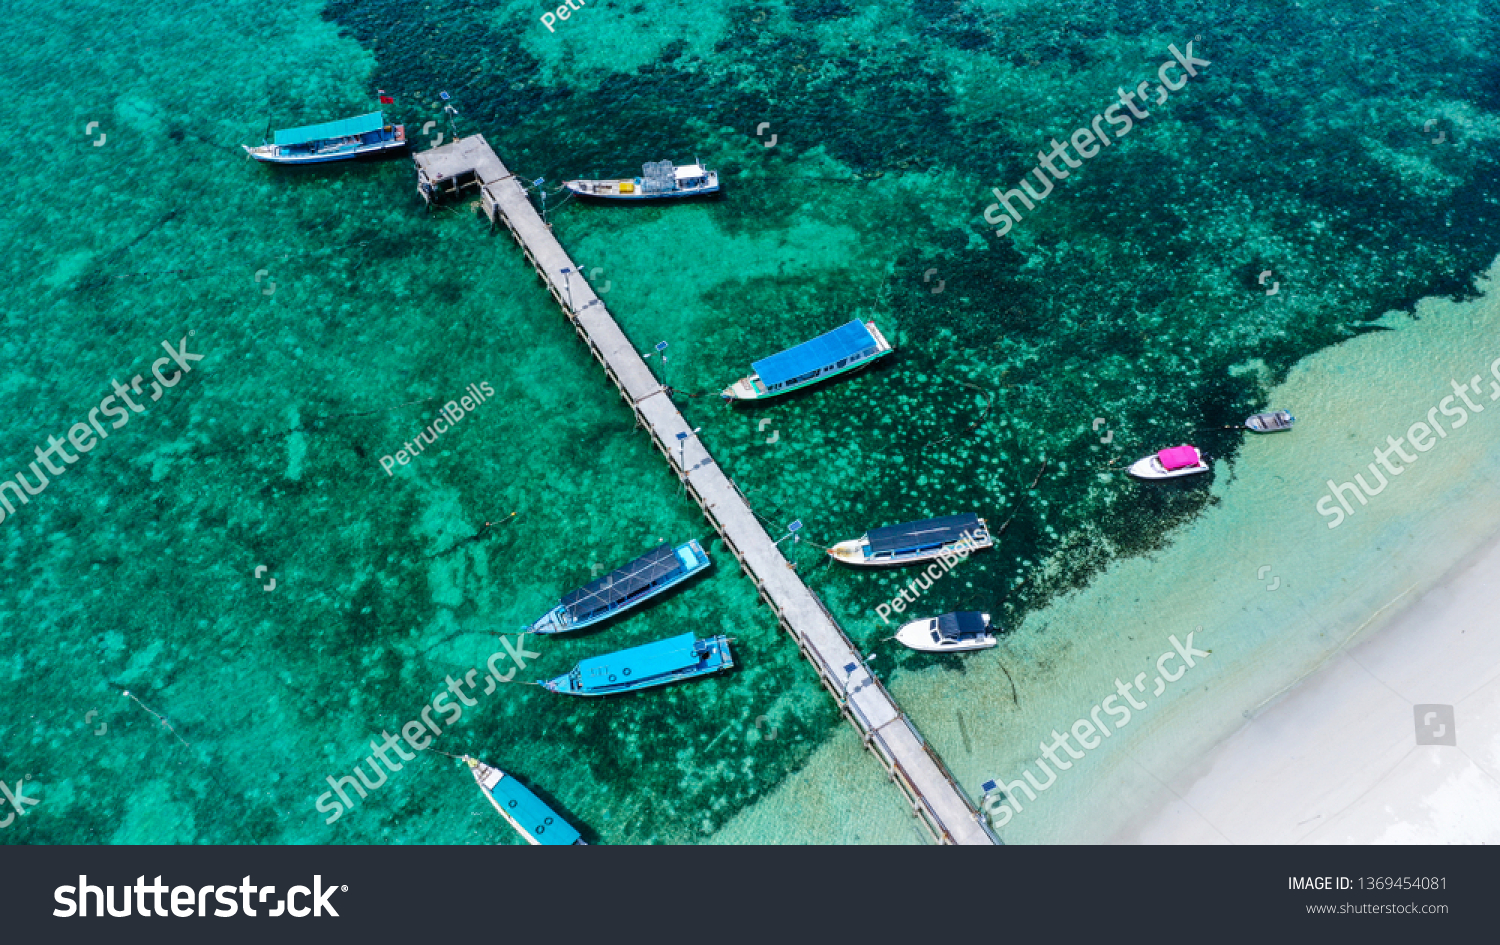 Tanjung kelayang, belitung island boat dock #1369454081